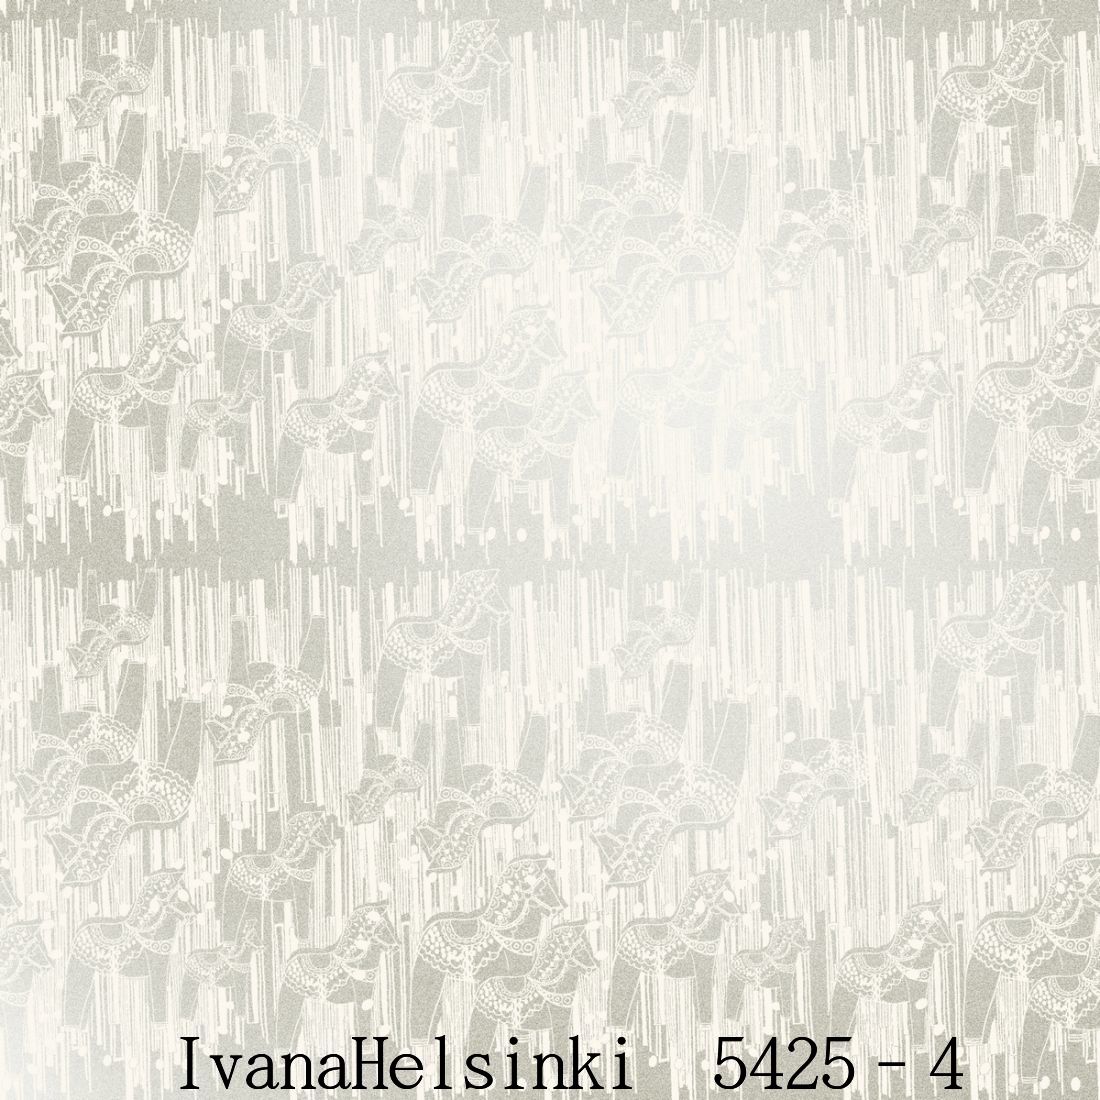 楽天市場 Ivanahelsinki イヴァナヘルシンキフィンランド製 壁紙5425 4 53cm幅 10m巻 裏面 フリース素材木馬 ダーラナホース 北欧 自然 シルバー輸入壁紙ivanahelsinki Wallpaper P10倍 Diy Life Tenko